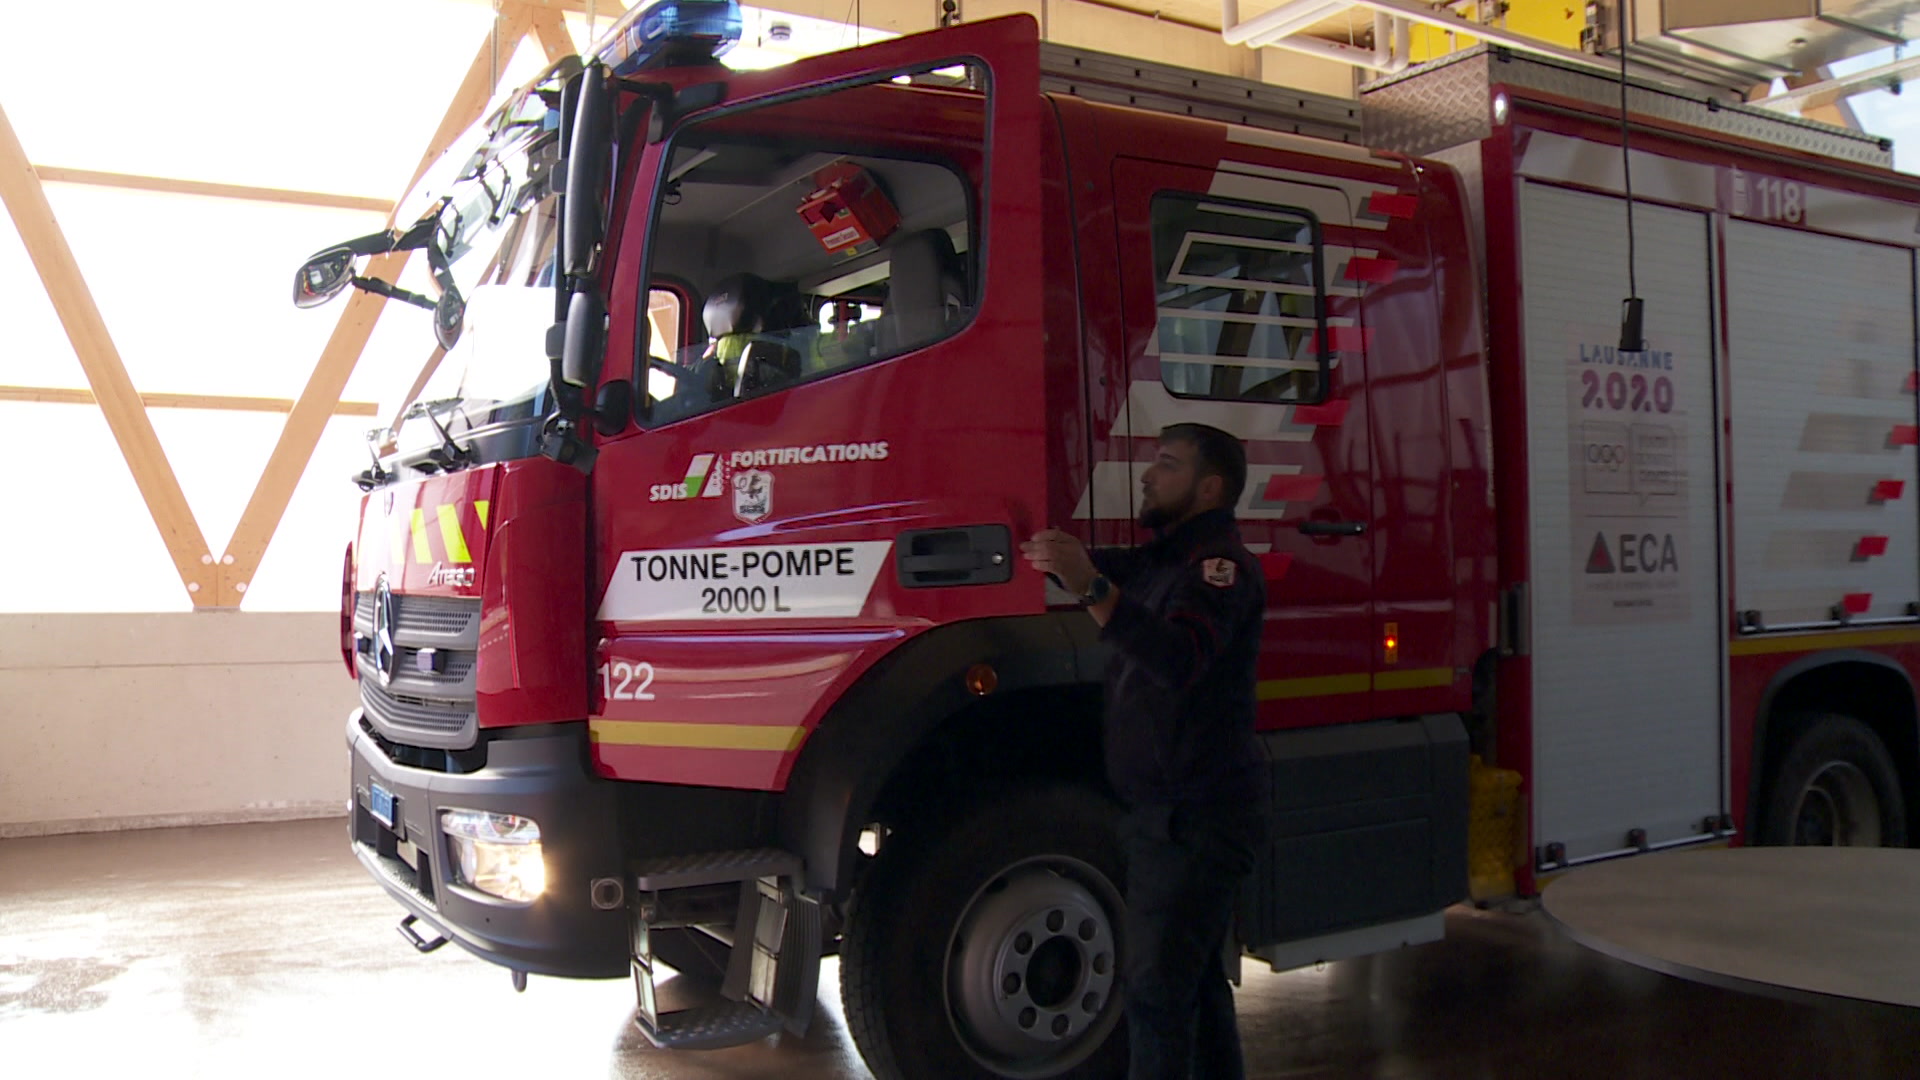 Saint-Maurice et Lavey-Morcles inaugurent leur caserne de pompiers  intercantonale